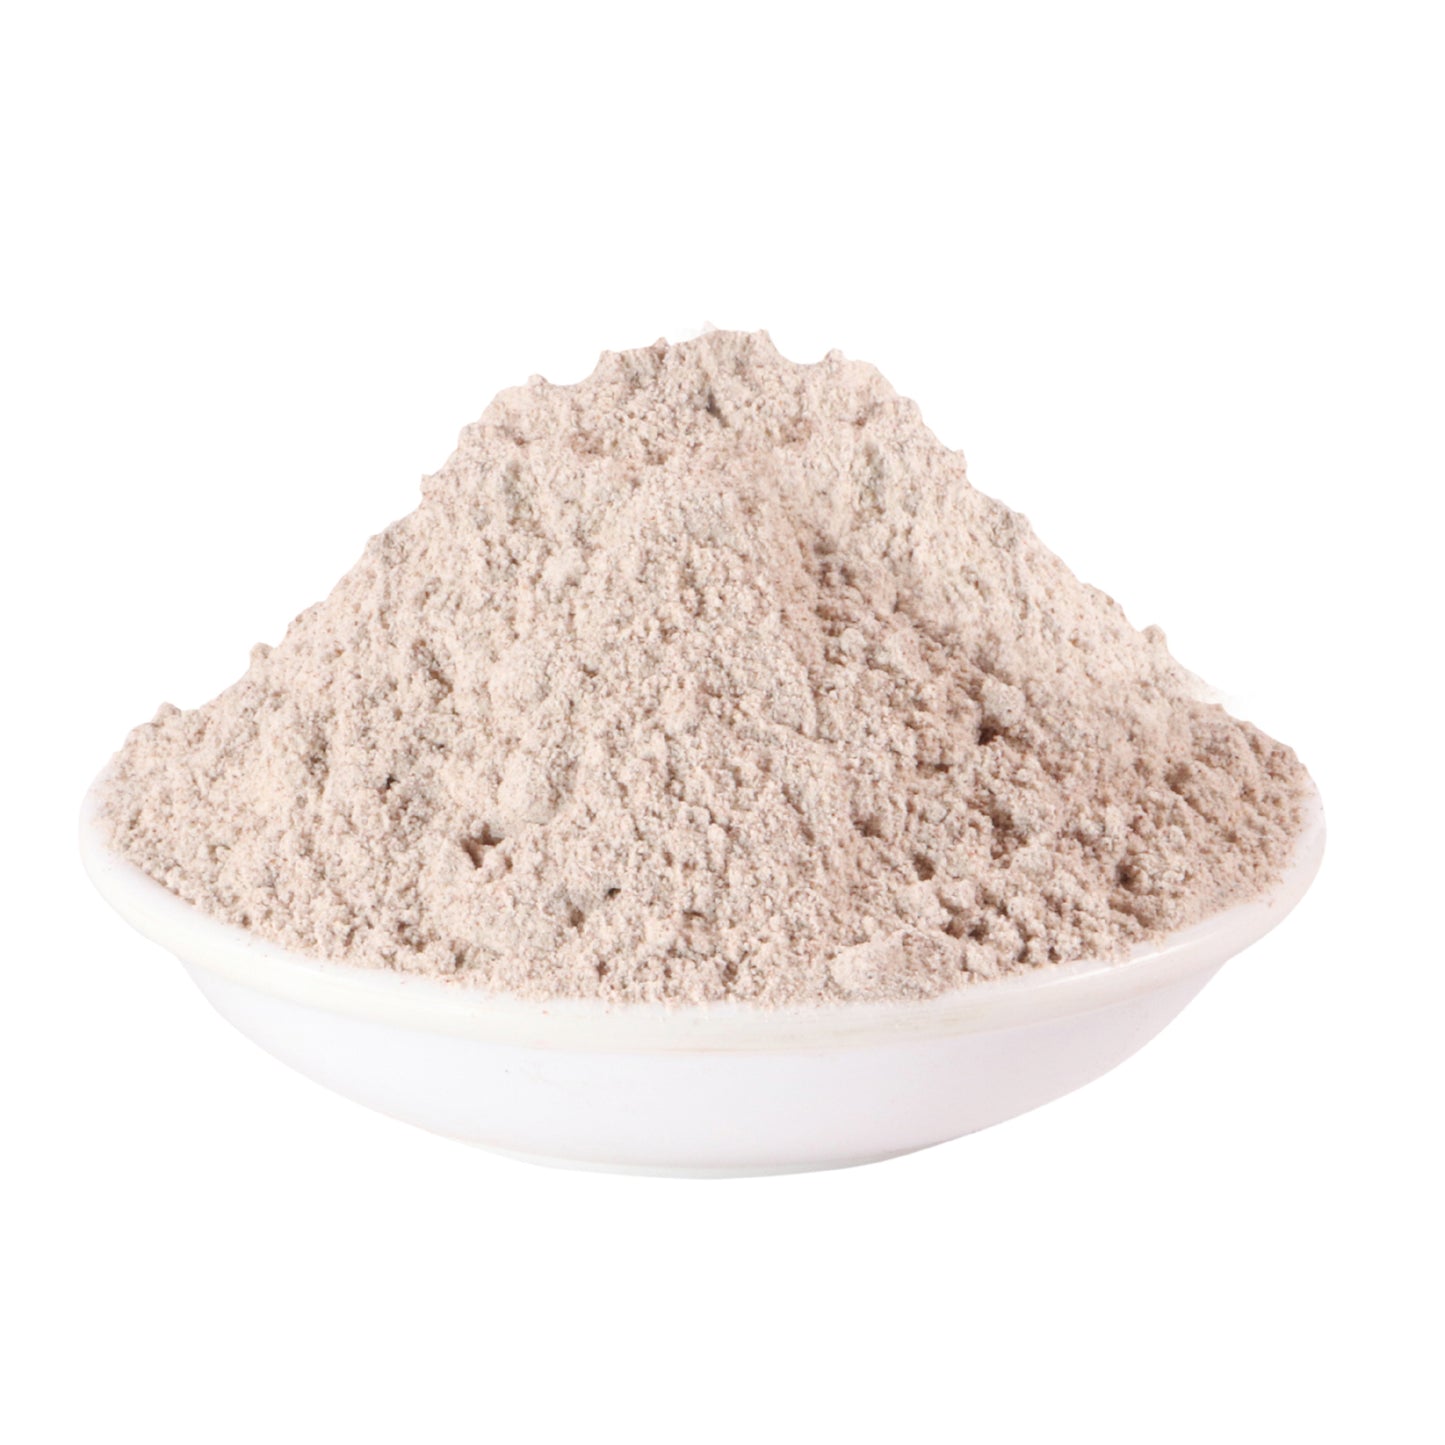 ਰਾਗੀ ਪਾਊਡਰ - Eleusine coracana - Finger Millet - Ragi Flour